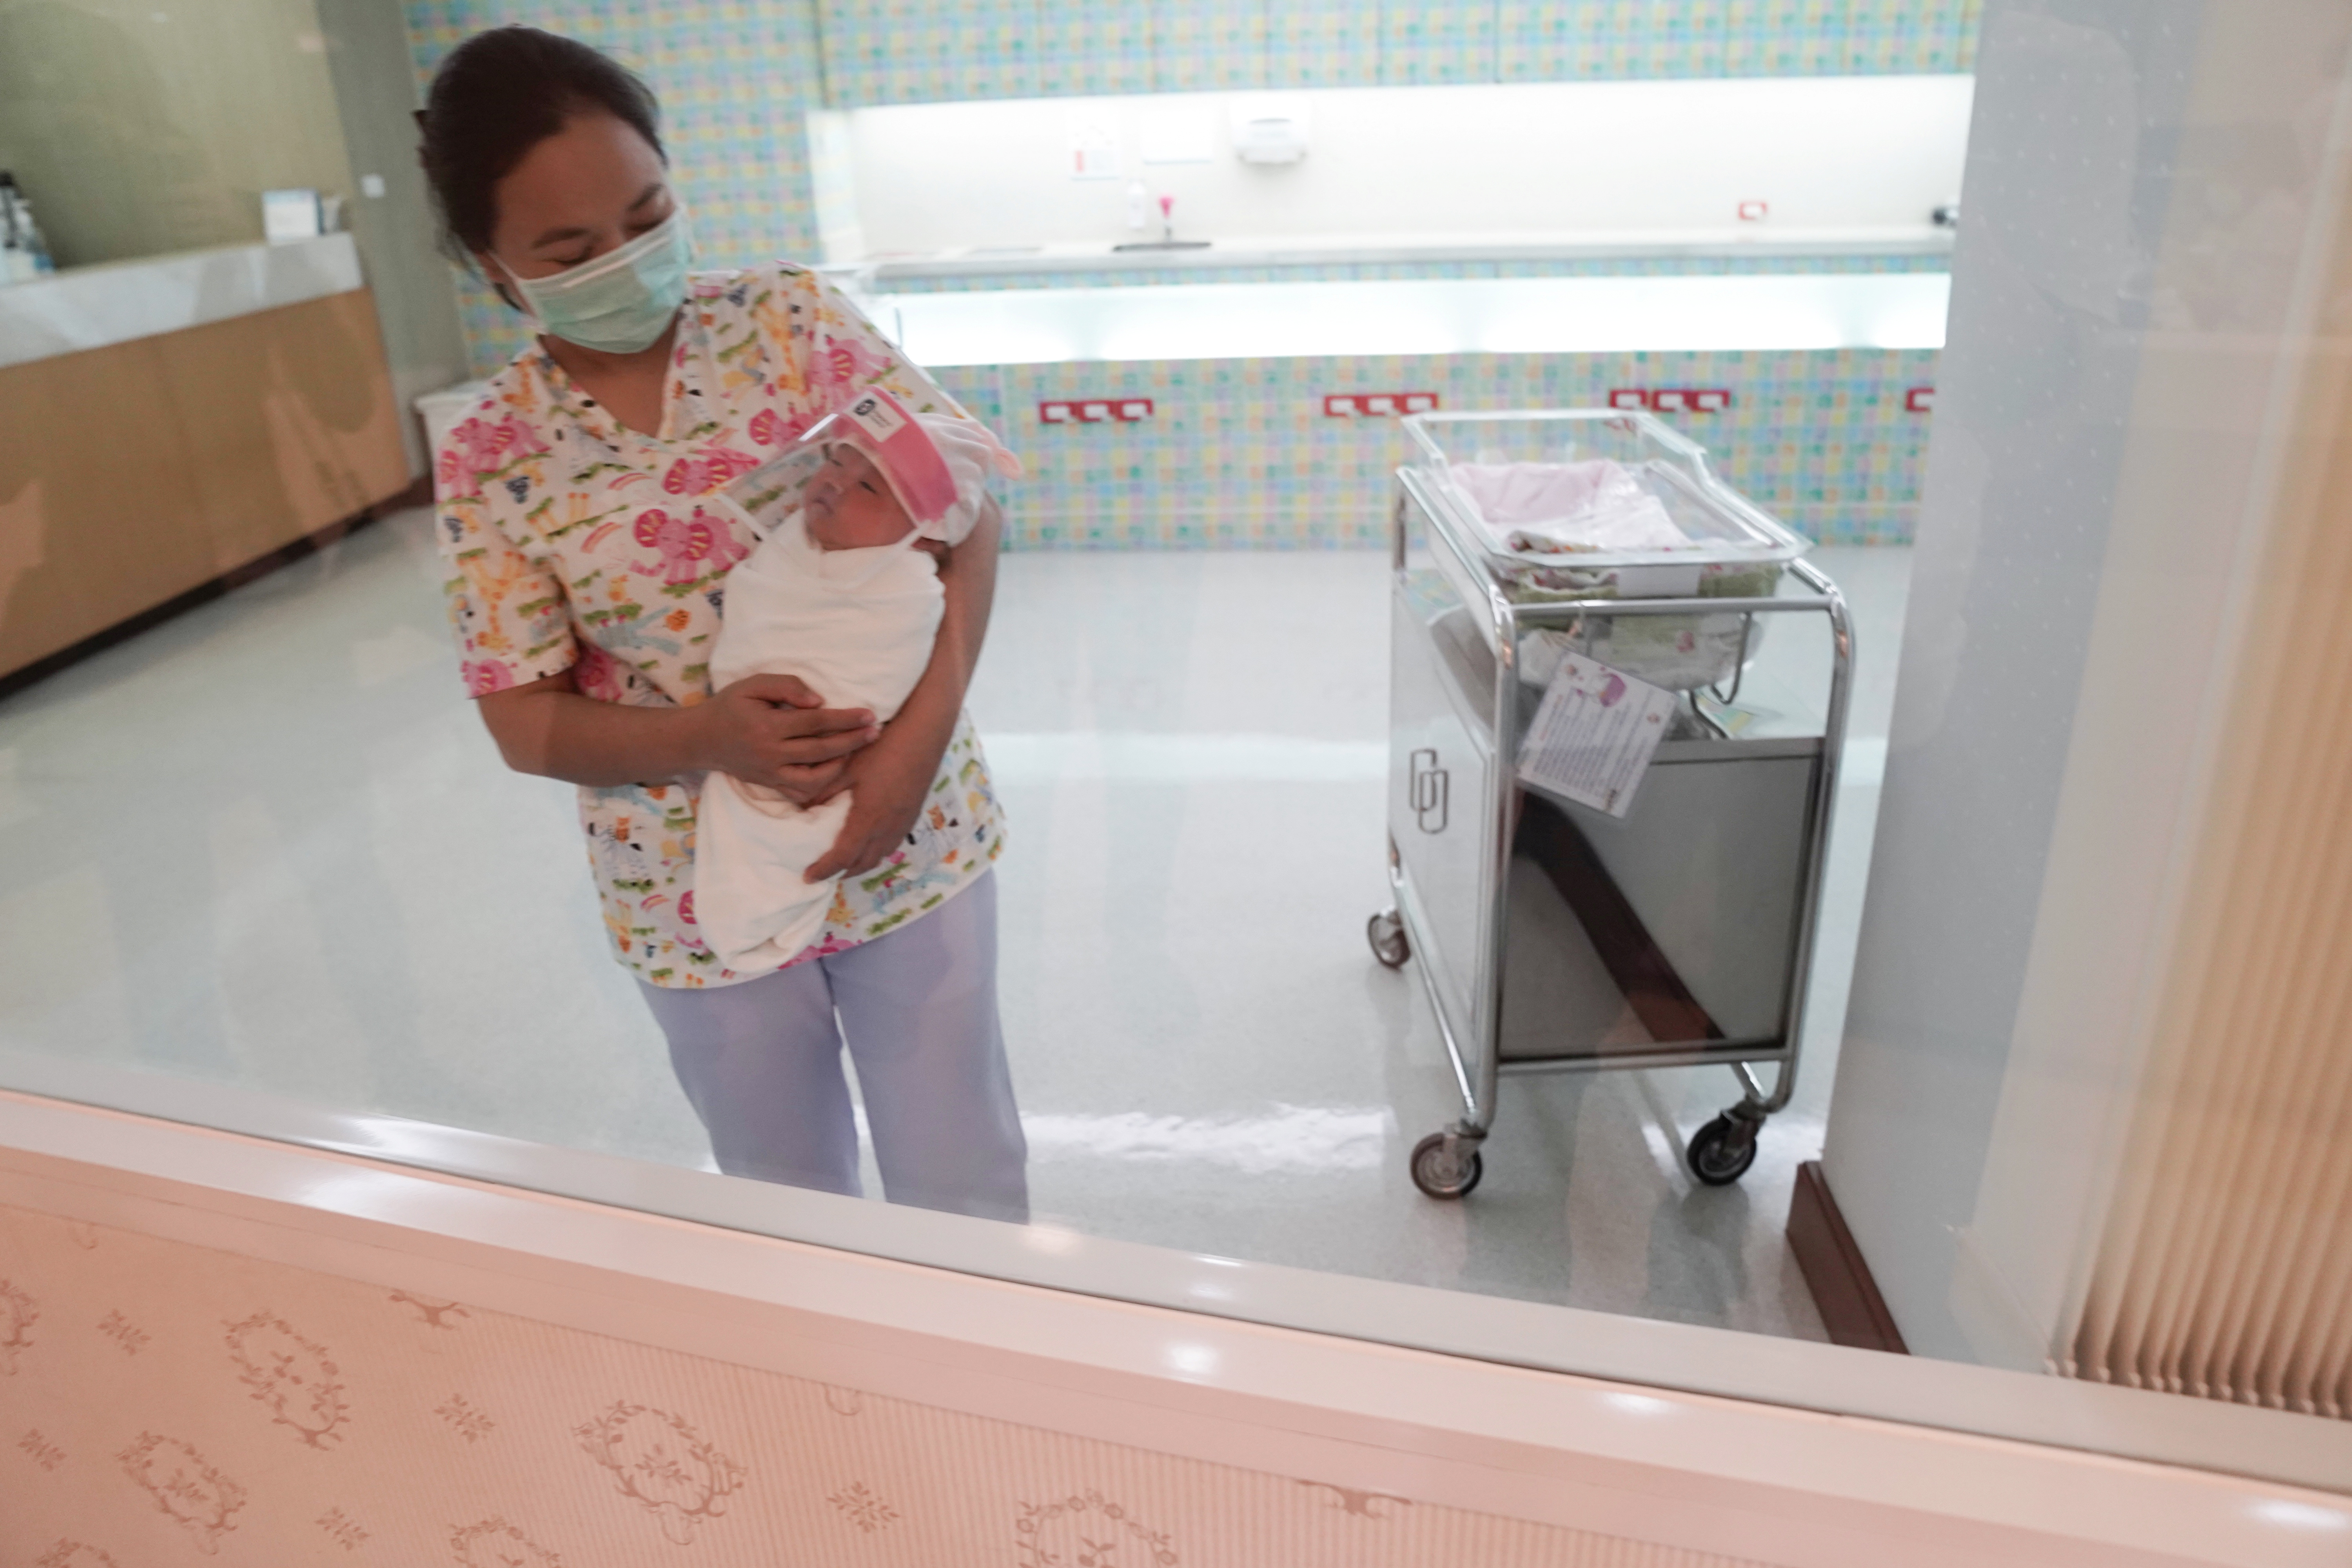 Una enfermera con una mascarilla protectora sostiene a un bebé recién nacido con un protector facial durante el brote de COVID-19 en el hospital Praram 9 en Bangkok, Tailandia, 9 de abril de 2020 (REUTERS/Athit Perawongmetha)